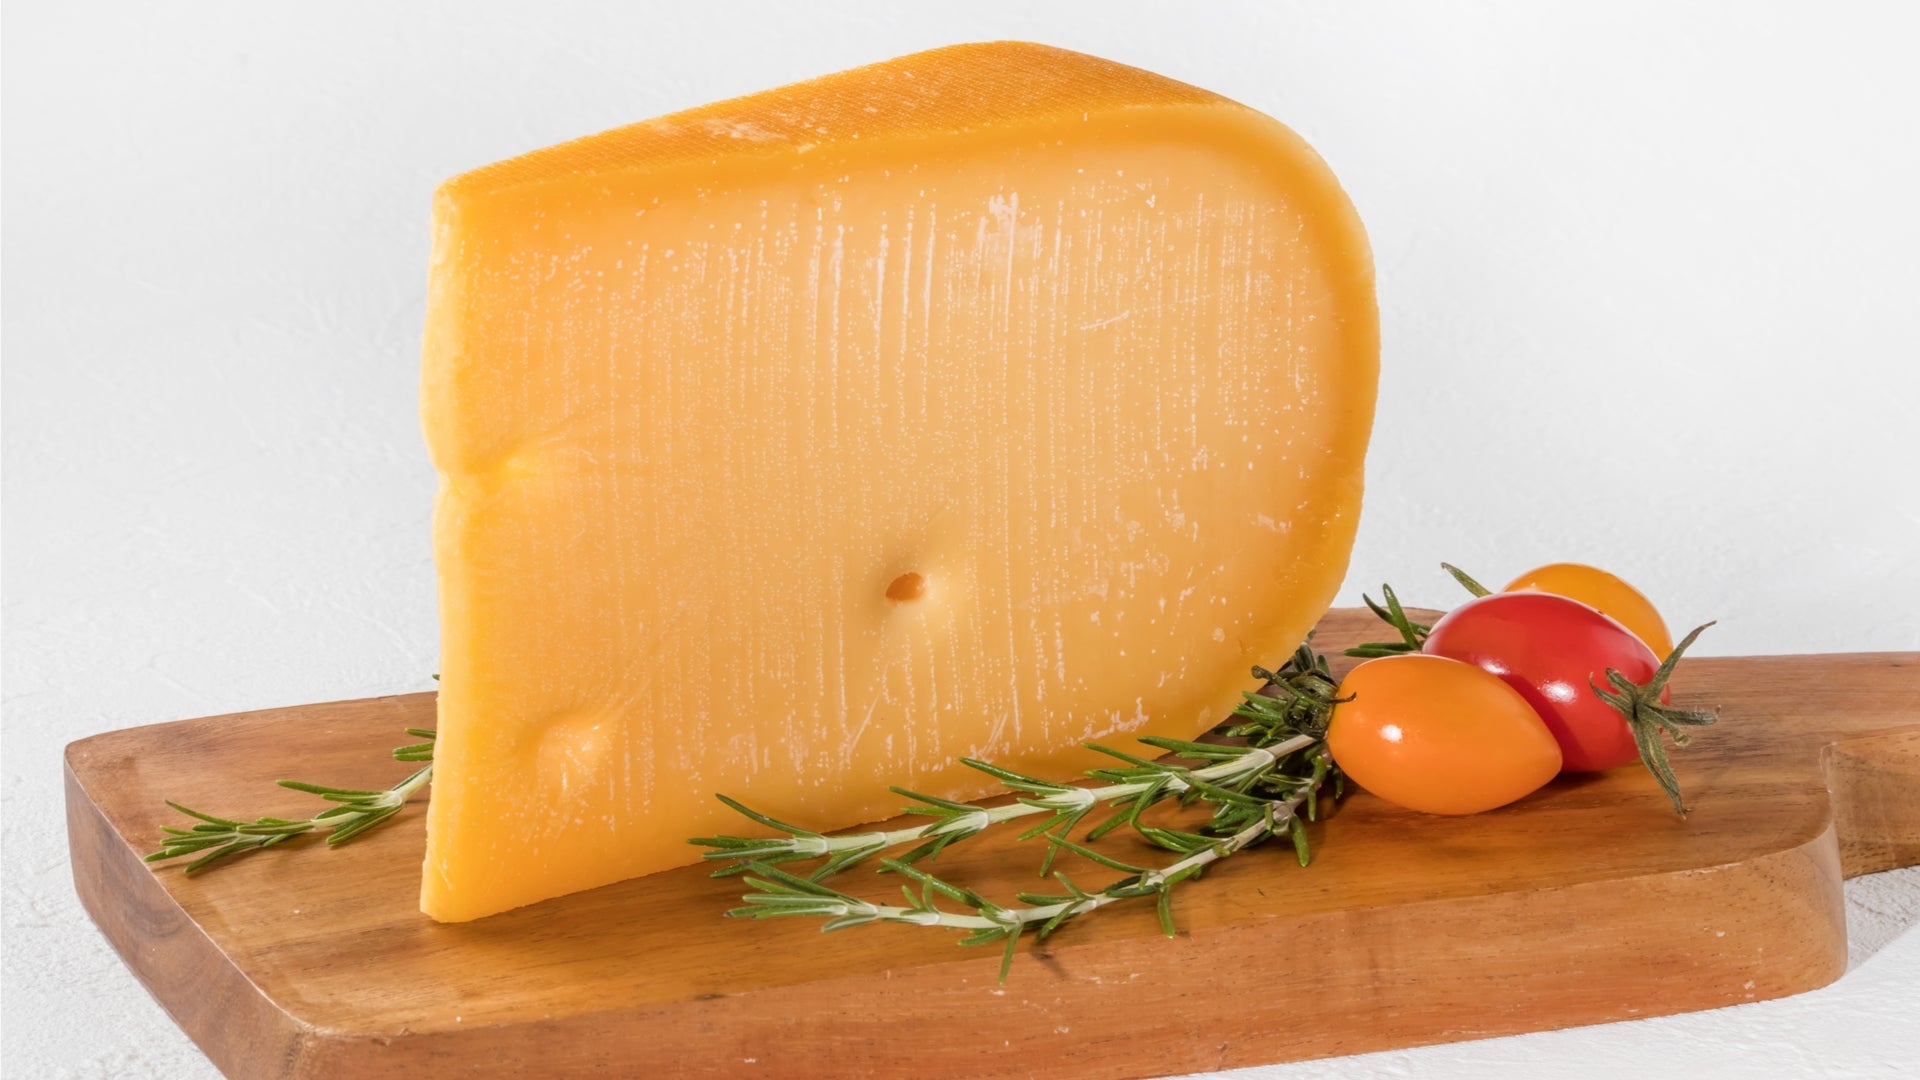 Cheese - Gouda 5 Year 8 oz